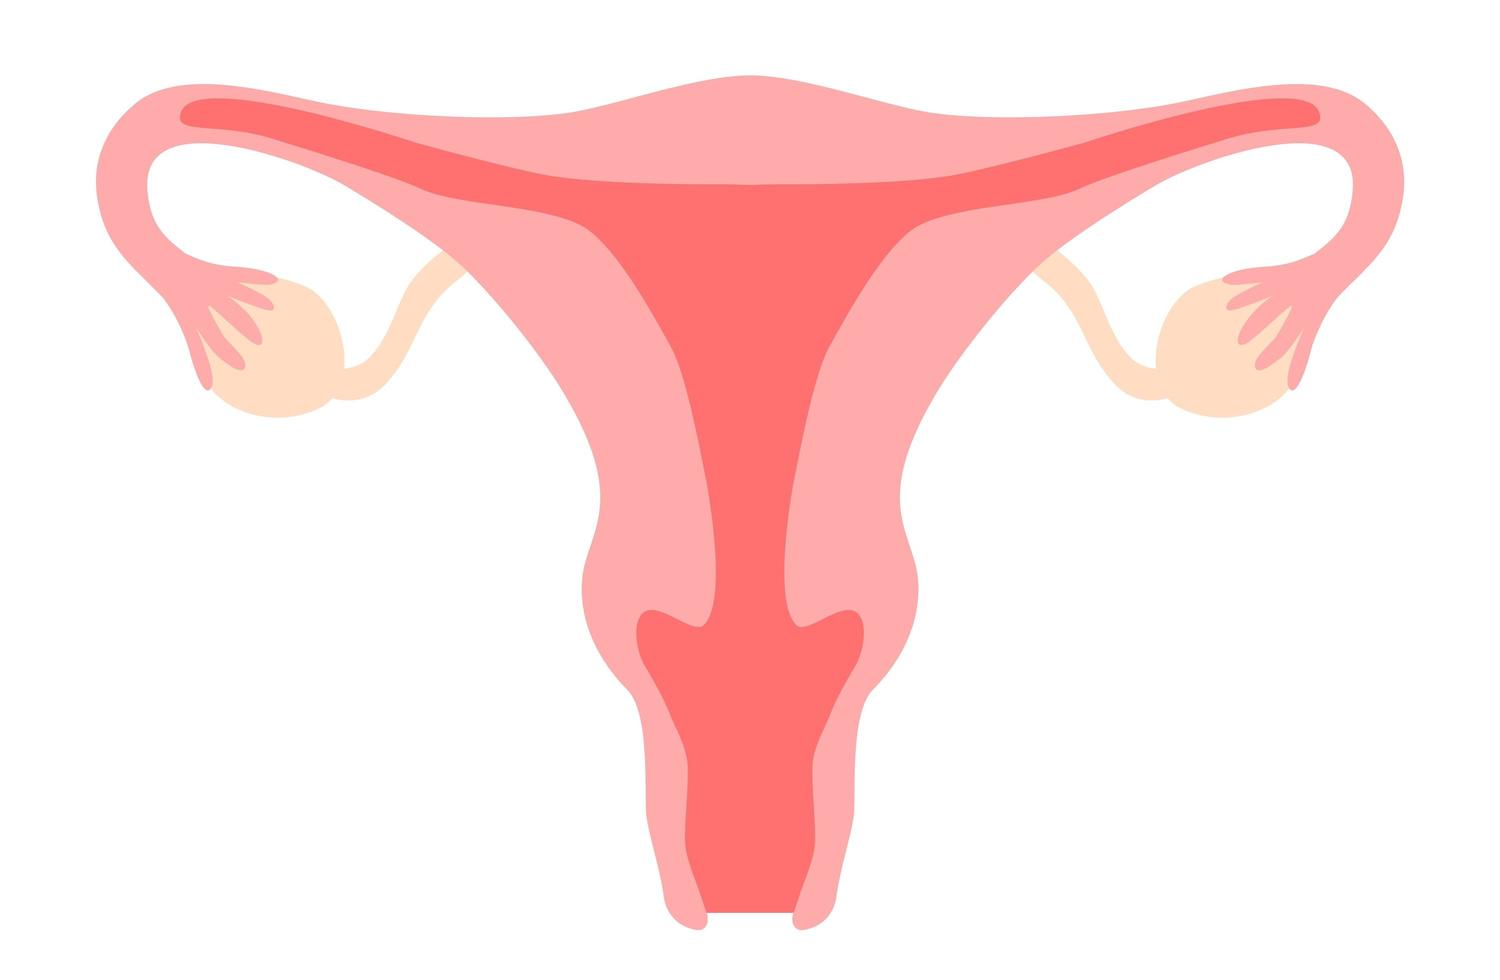 Gebärmutter clipart. Gebärmutter, Vagina, Eierstock, Gebärmutterhals. Fortpflanzungssystem der Frau, Gynäkologie, Fruchtbarkeit, Menstruationszyklus, Girl-Power-Konzept. Vektor-Illustration auf weißem Hintergrund im flachen Cartoon-Stil isoliert vektor